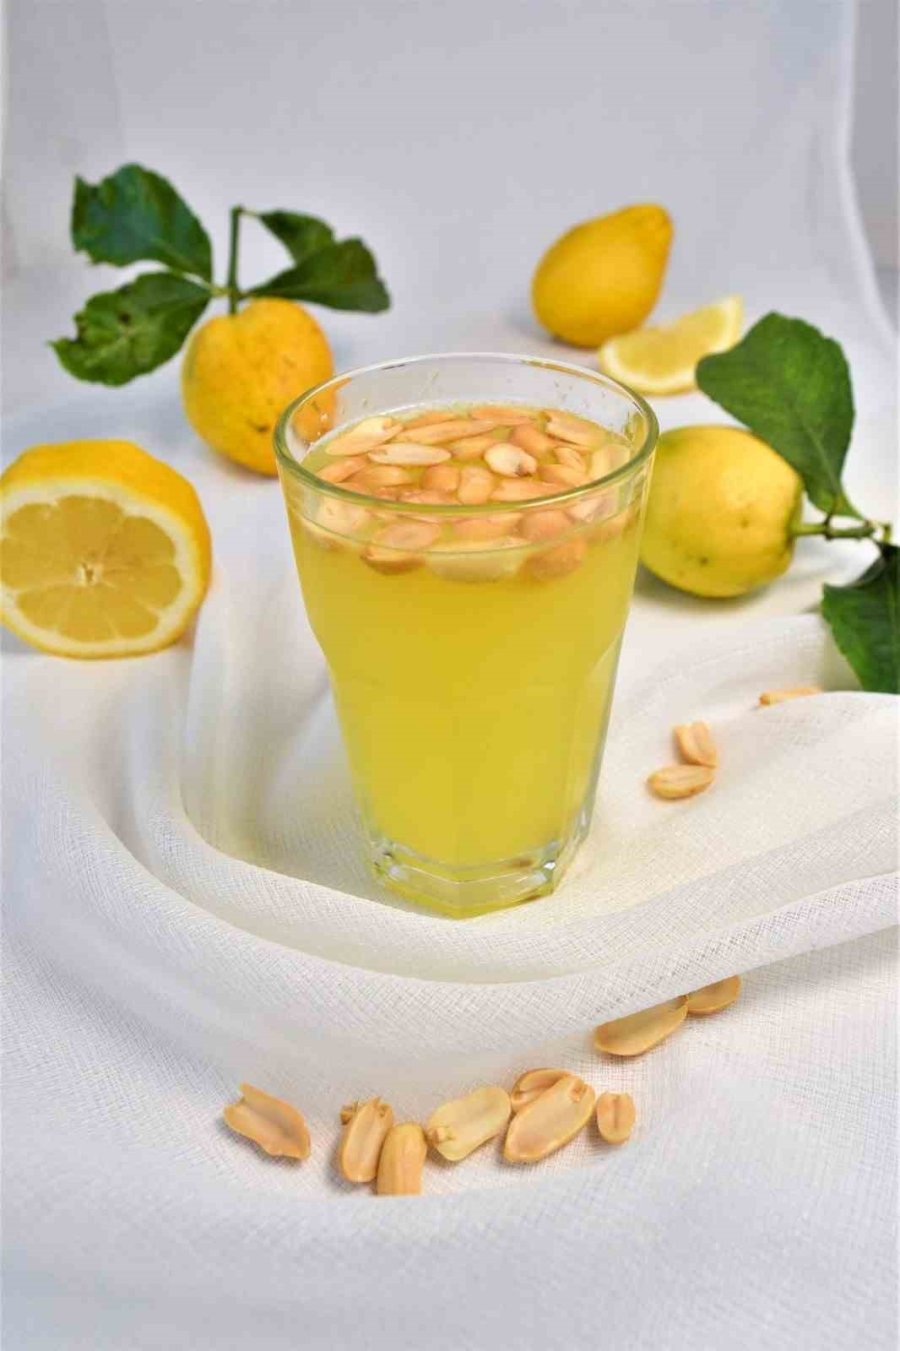 ’fıstıklı Limonata’ Alanya’nın Tescilli Lezzeti Oldu